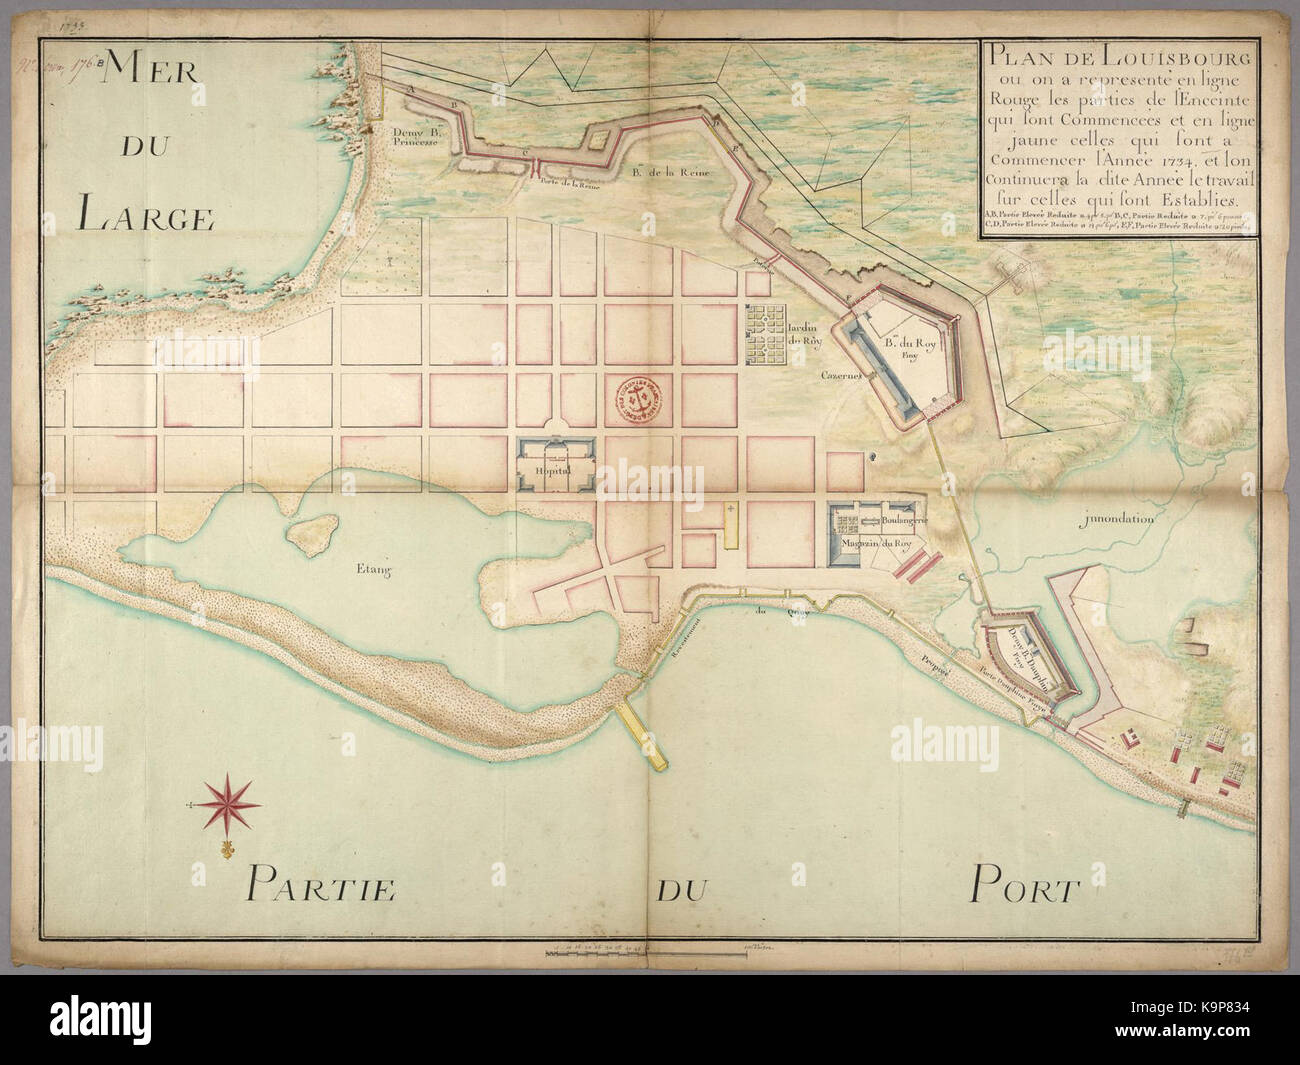 Plan de Louisbourg ou en un represente en ligne rouge les partes de l enceinte qui sont commencees et en ligne jaune celles qui sont un commencer l annee 1734 Foto de stock